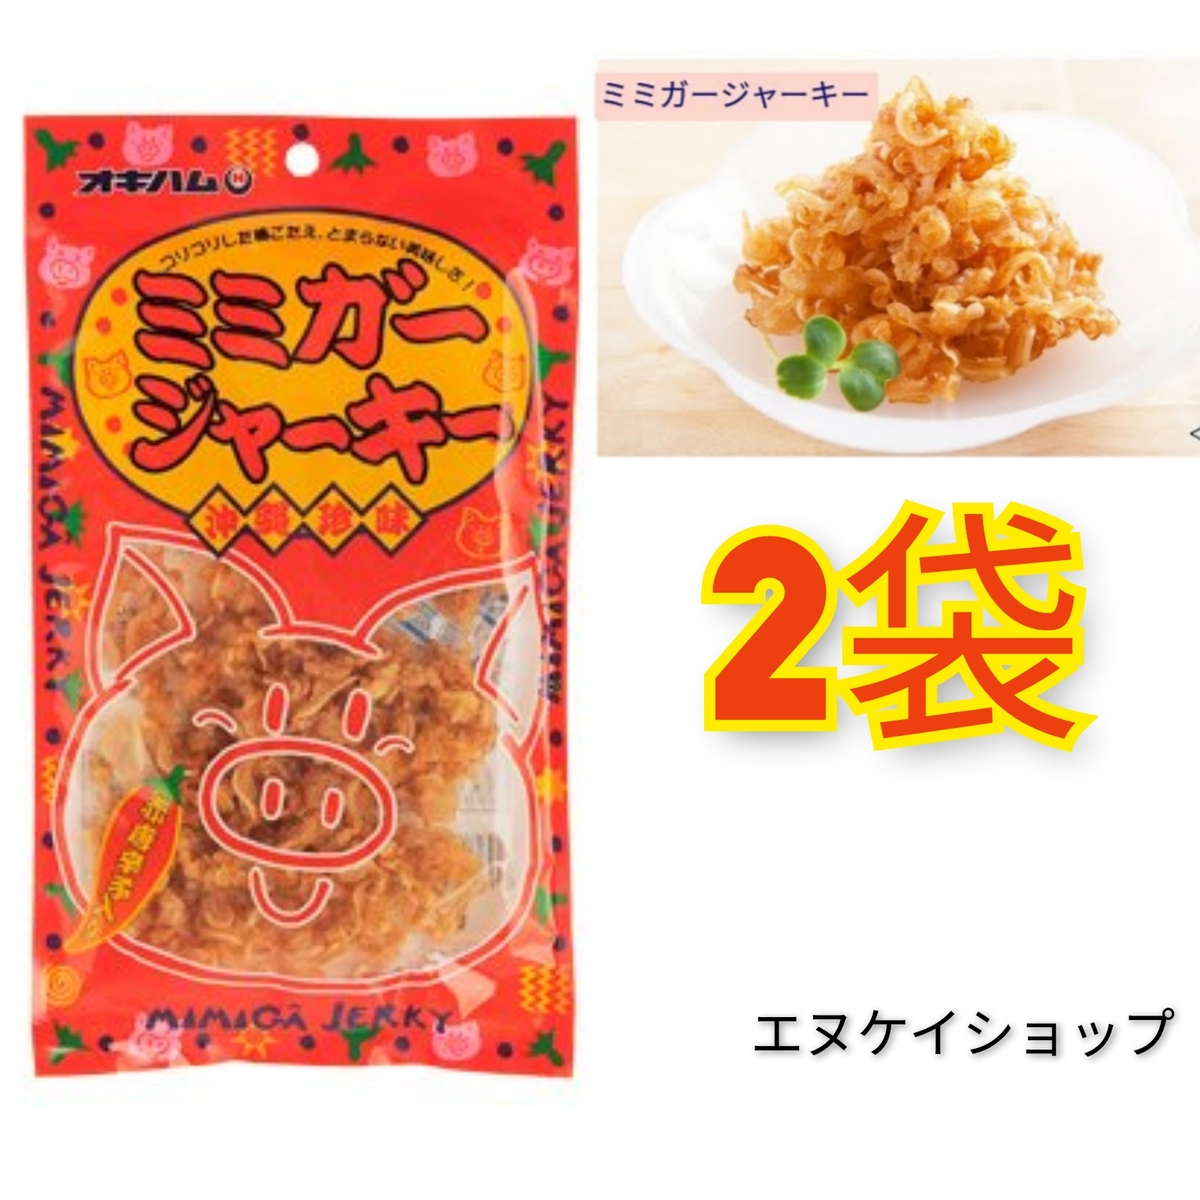 ミミガージャーキー 23g×5袋 オキハム人気商品 おつまみ 珍味 - 肉類